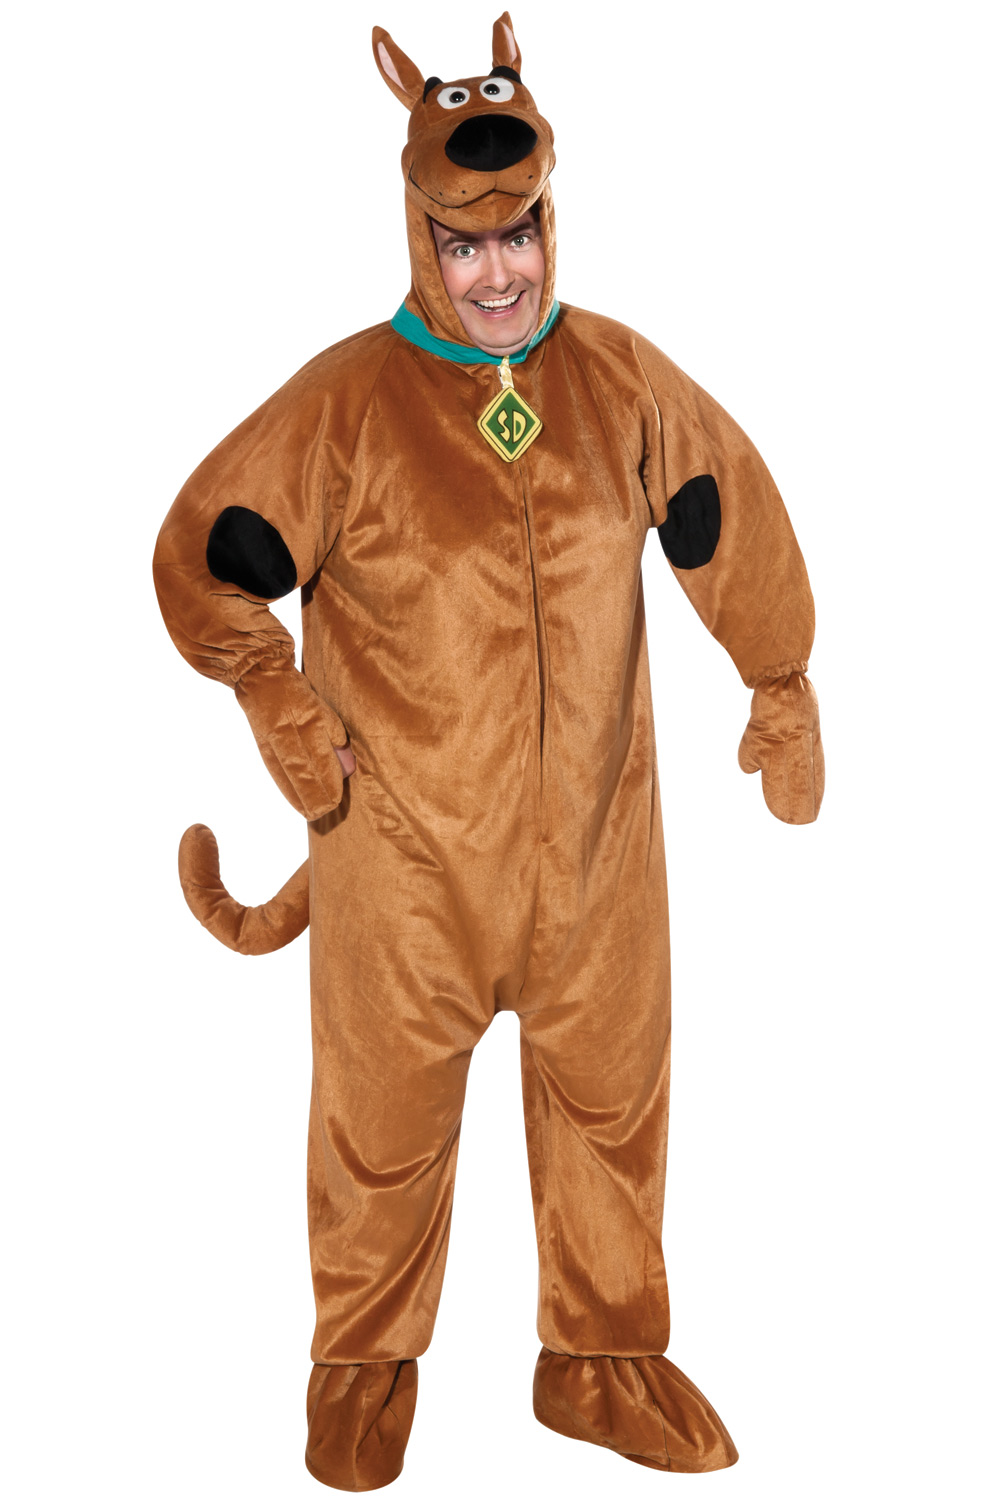 Scooby Doo Plus Size Costume.